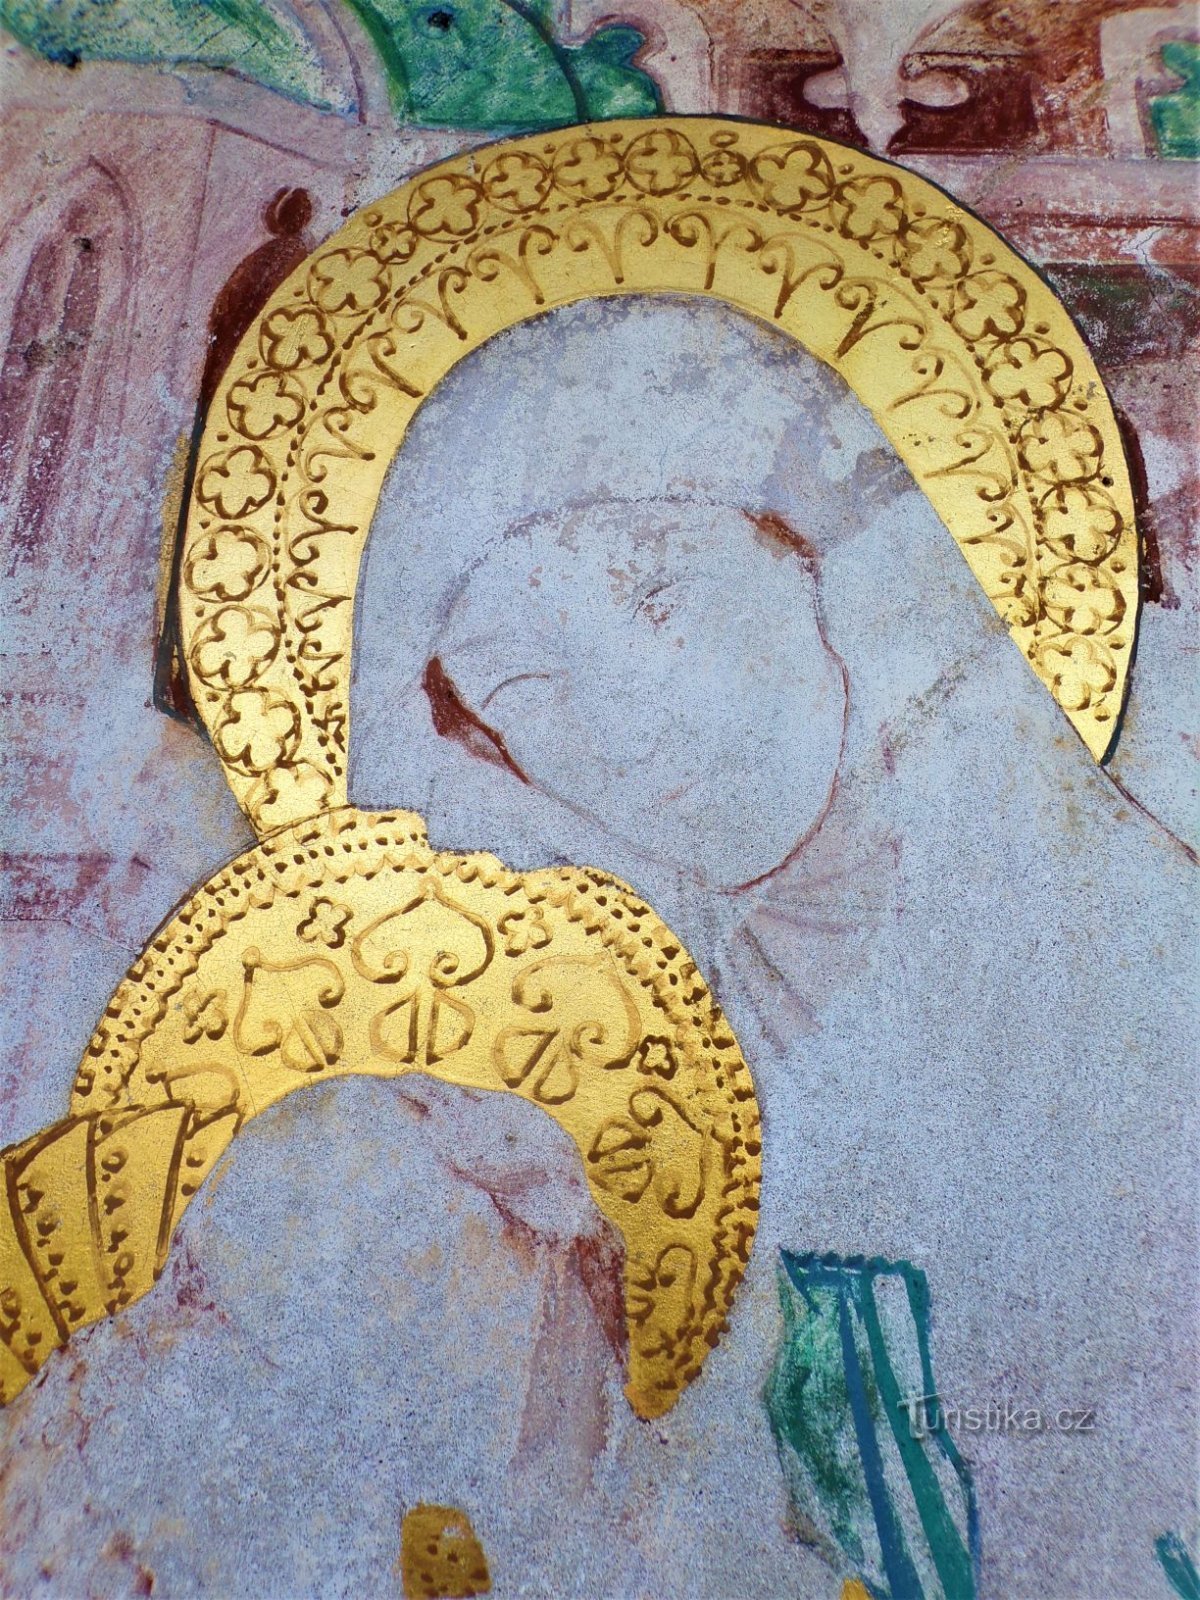 Détail de St. Anne dans le tableau de la chapelle St. Anny (Dobřenice, 8.5.2021 mai XNUMX)